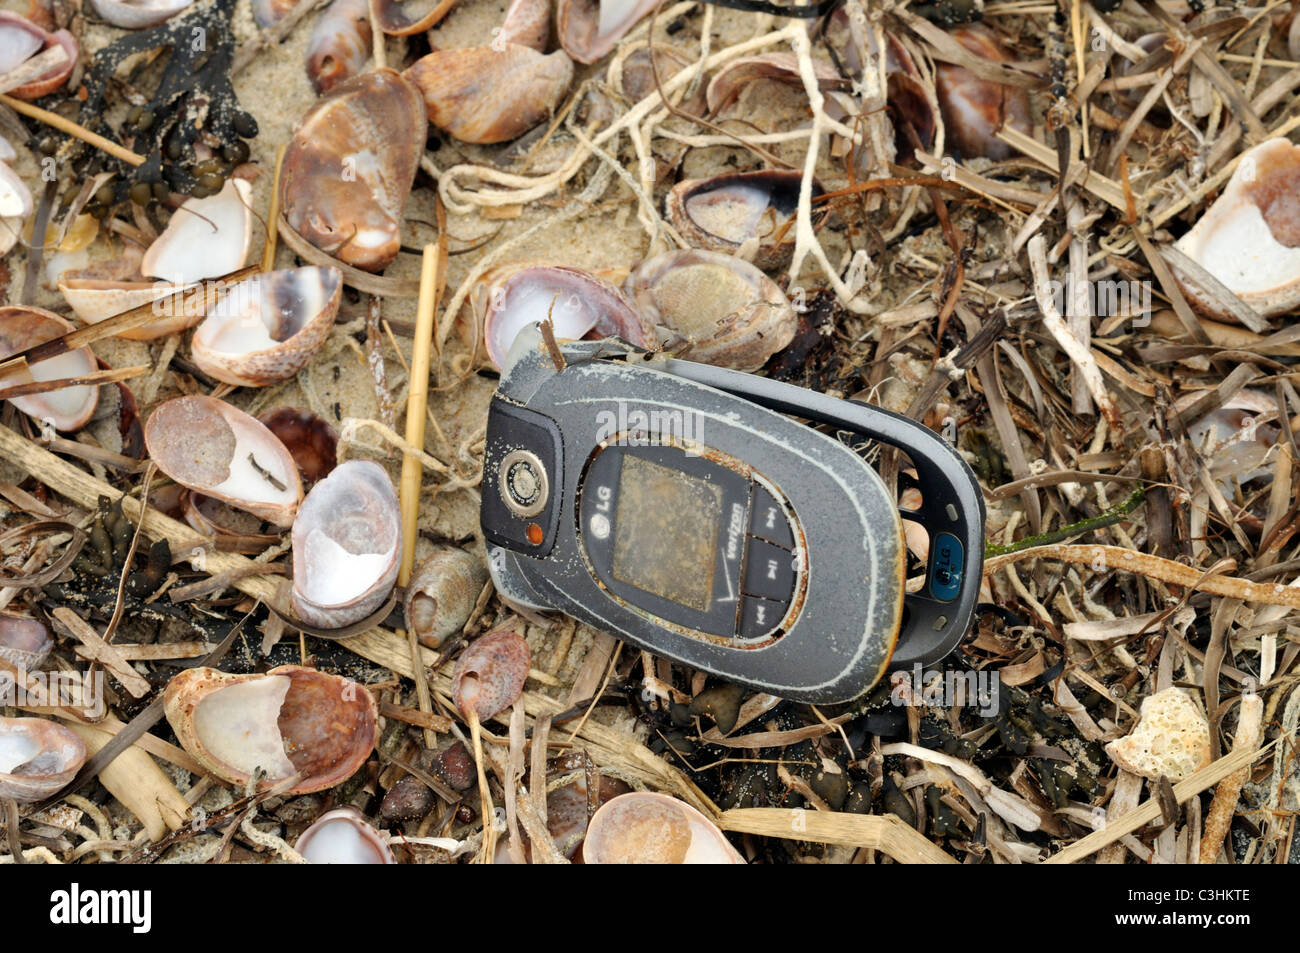 Descartan móvil varada en una playa de arena de Cape Cod con conchas marinas. Foto de stock